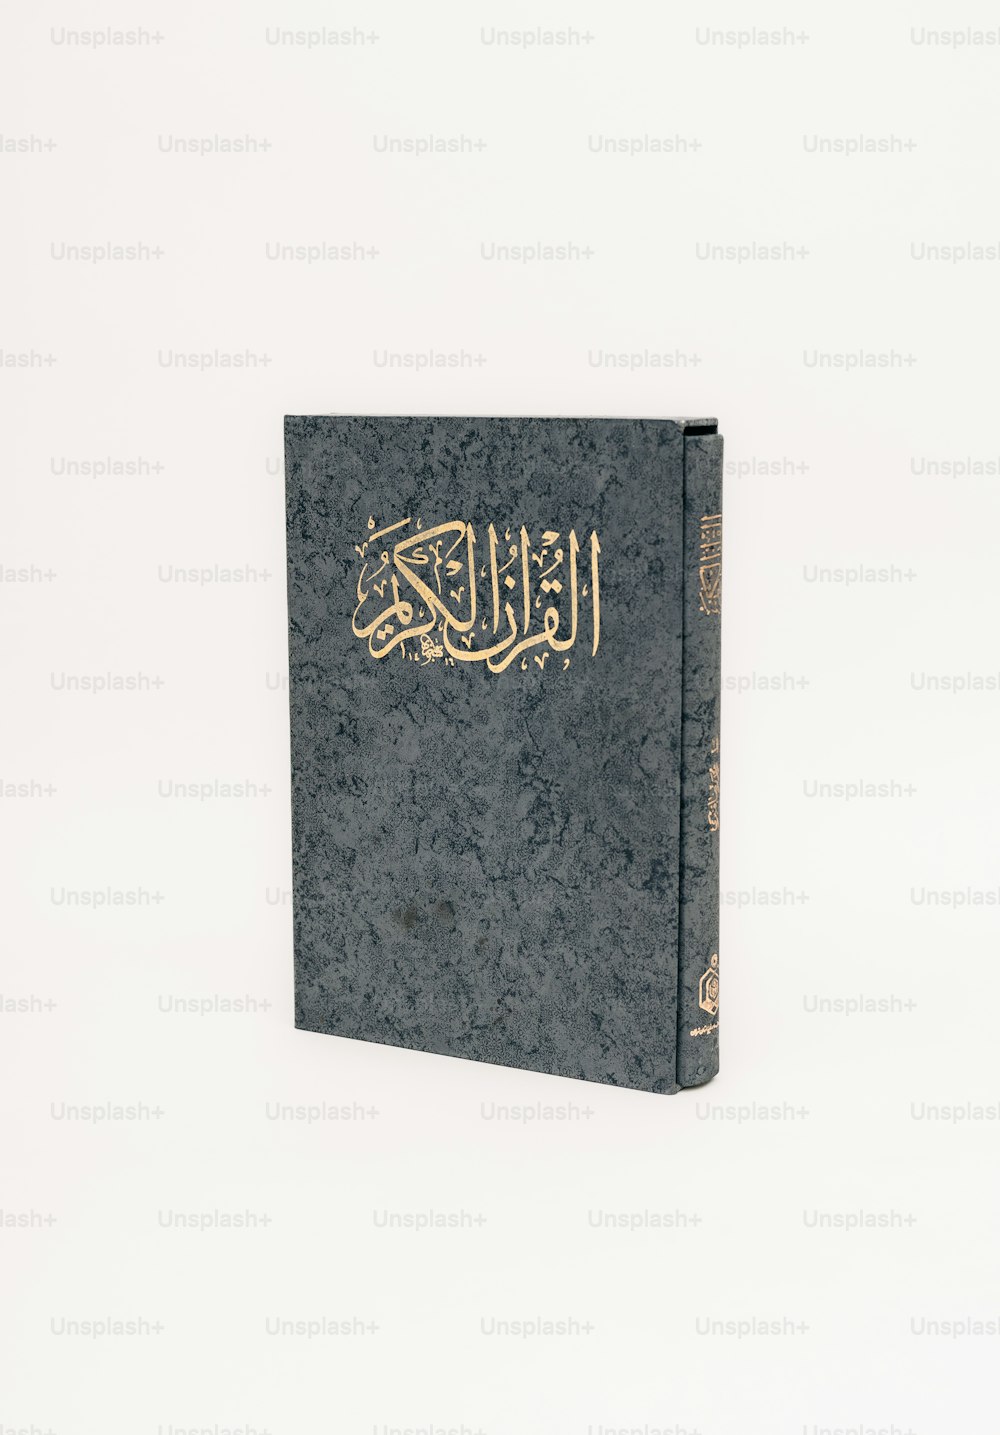 Un libro con escritura árabe sobre fondo blanco